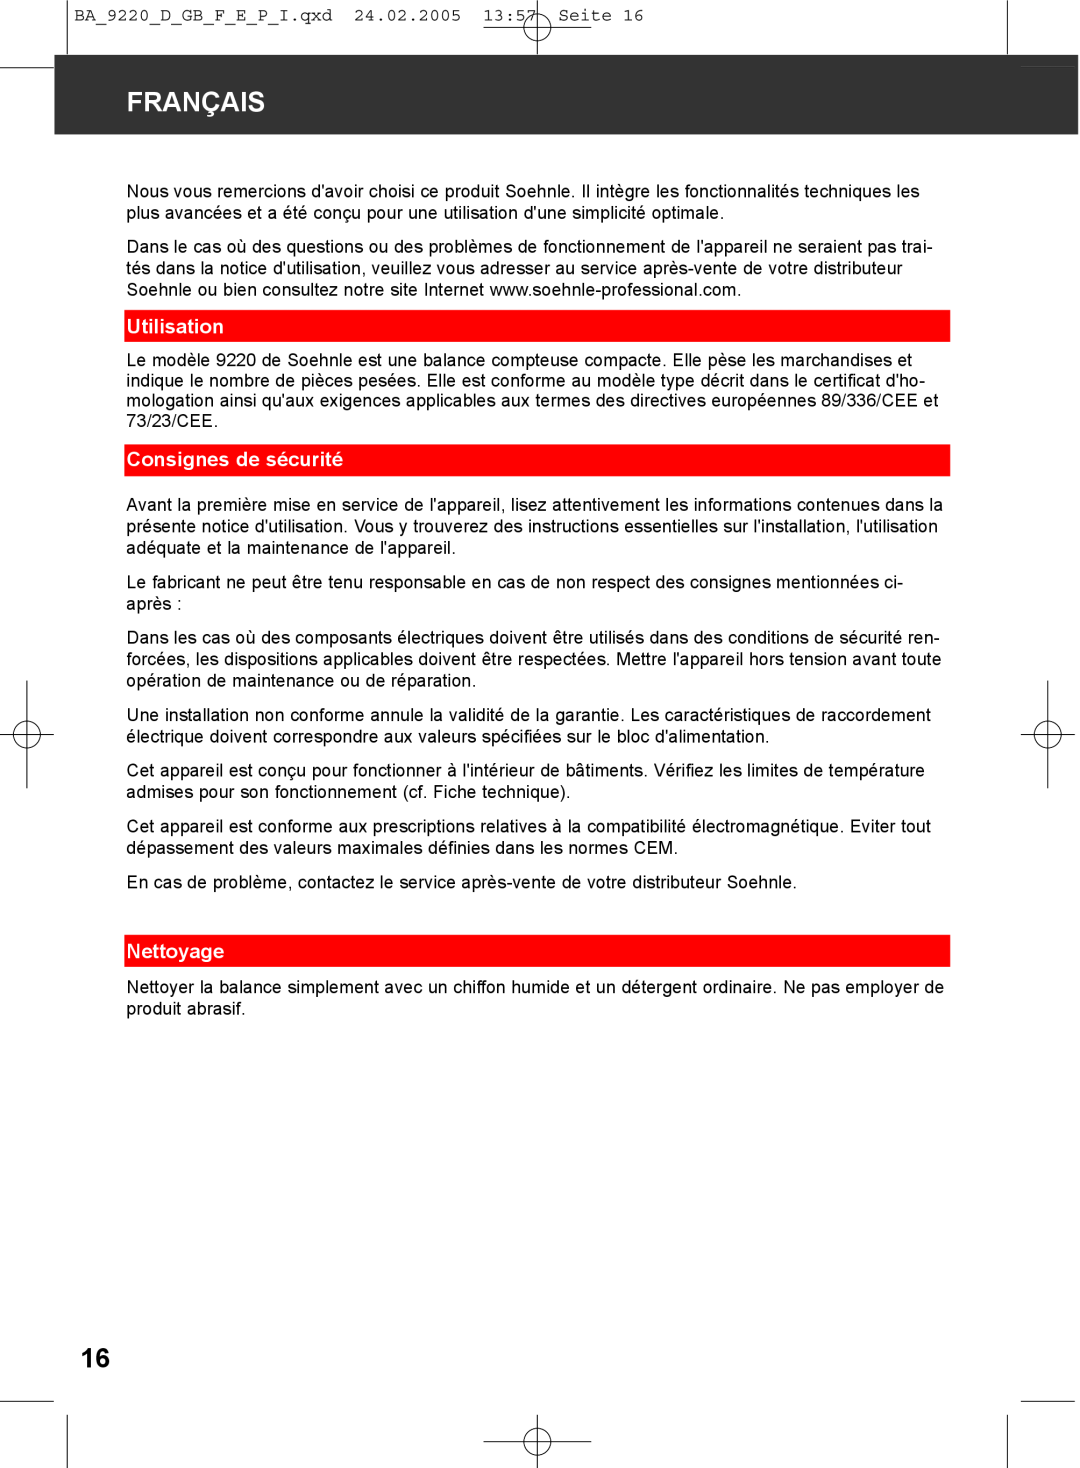 Soehnle 9220 manual Français, Utilisation, Consignes de sécurité, Nettoyage 